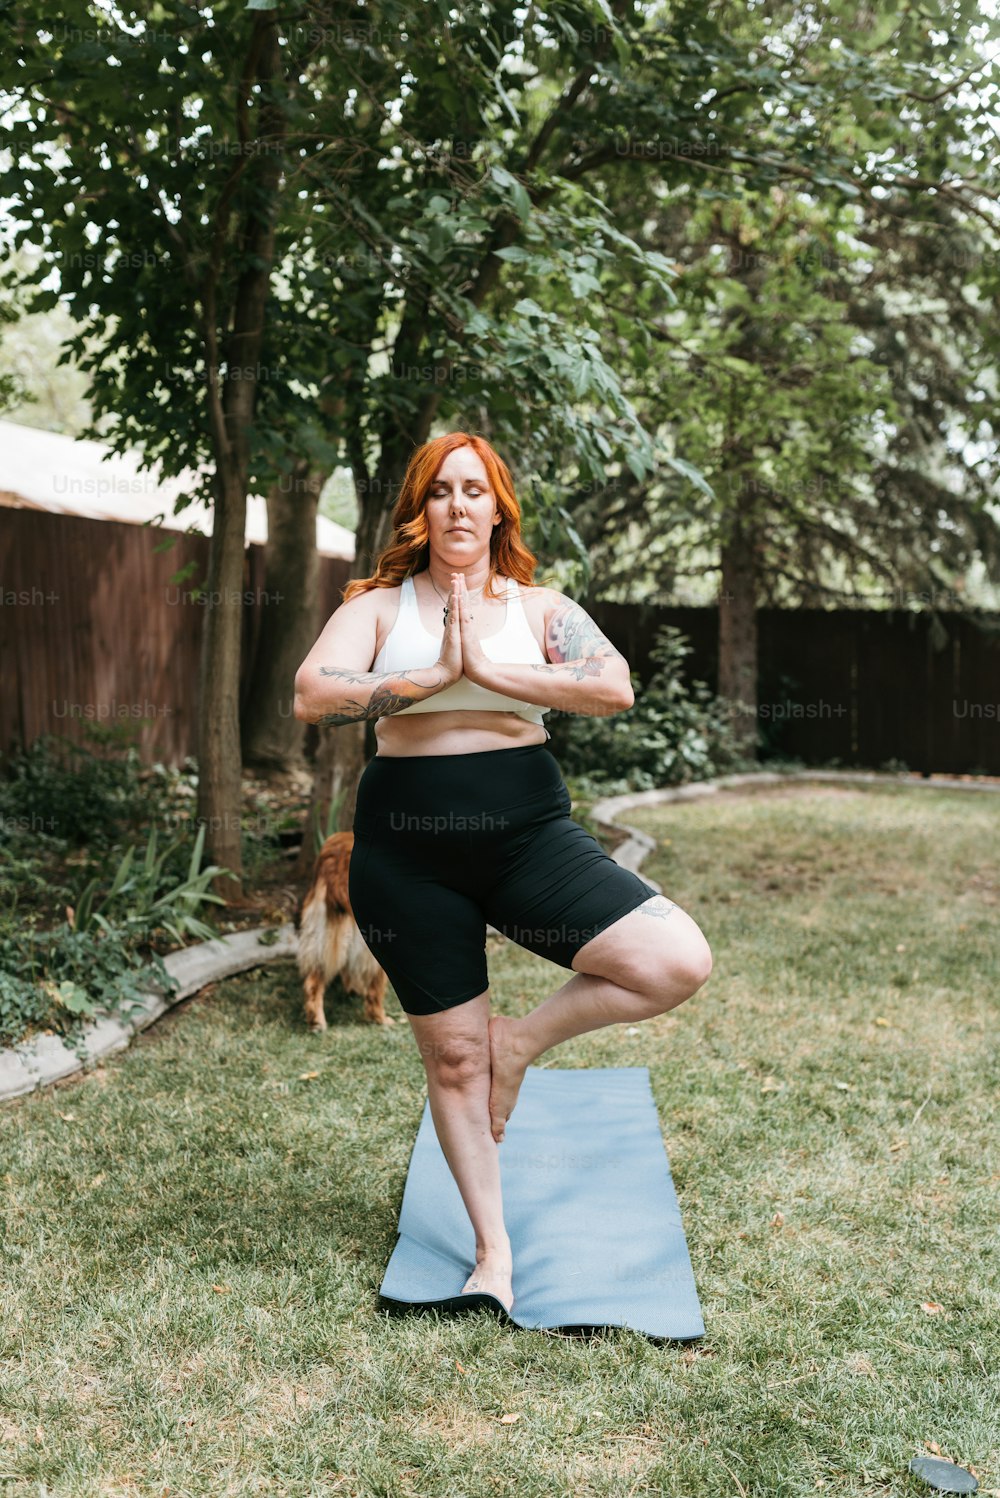 Eine Frau, die auf einer Yogamatte in einem Garten steht